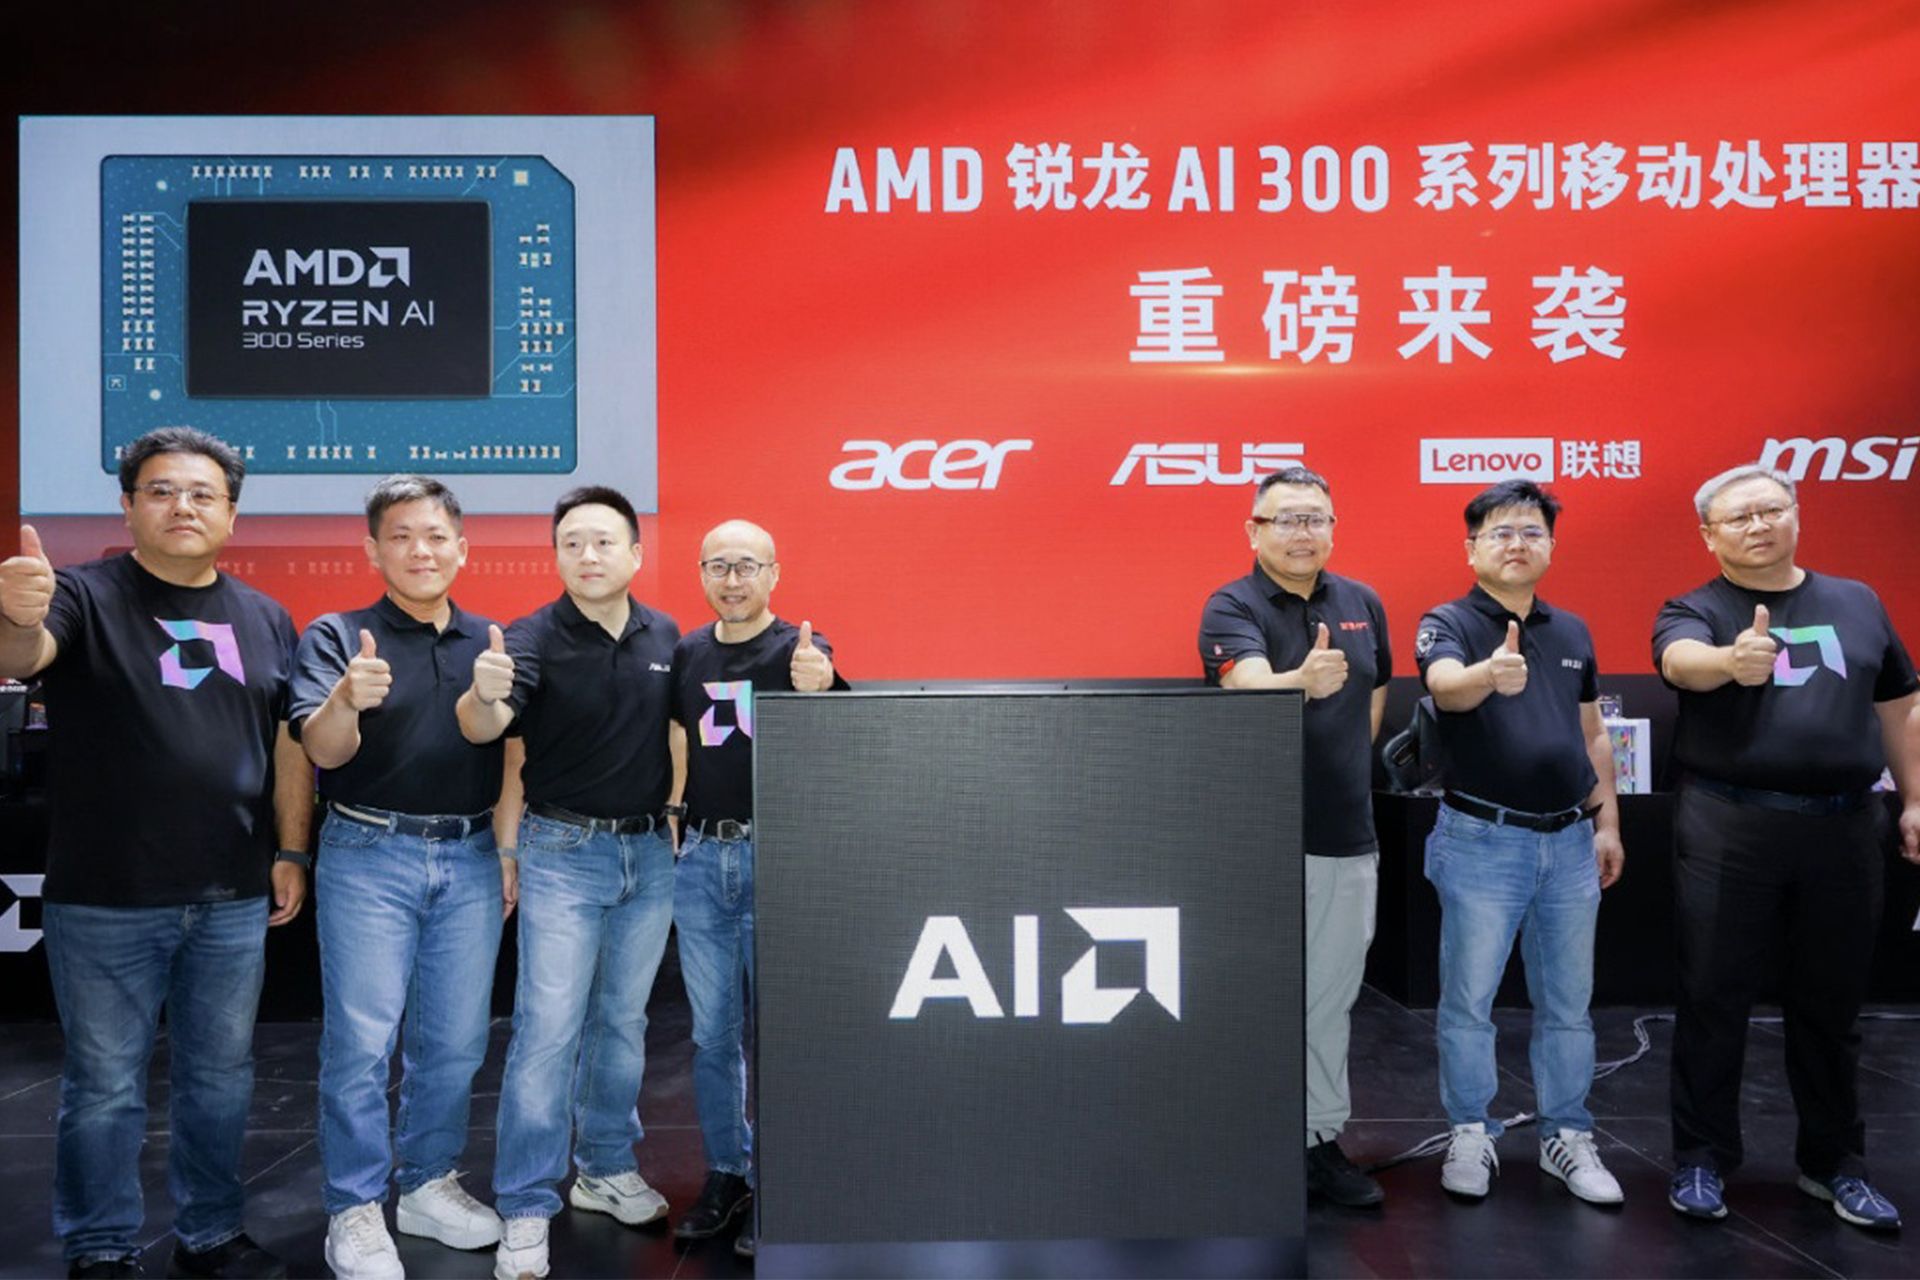 مراسم MSI برای معرفی سری لپ تاپ های MSI با پردازنده AMD Ryzen AI 300